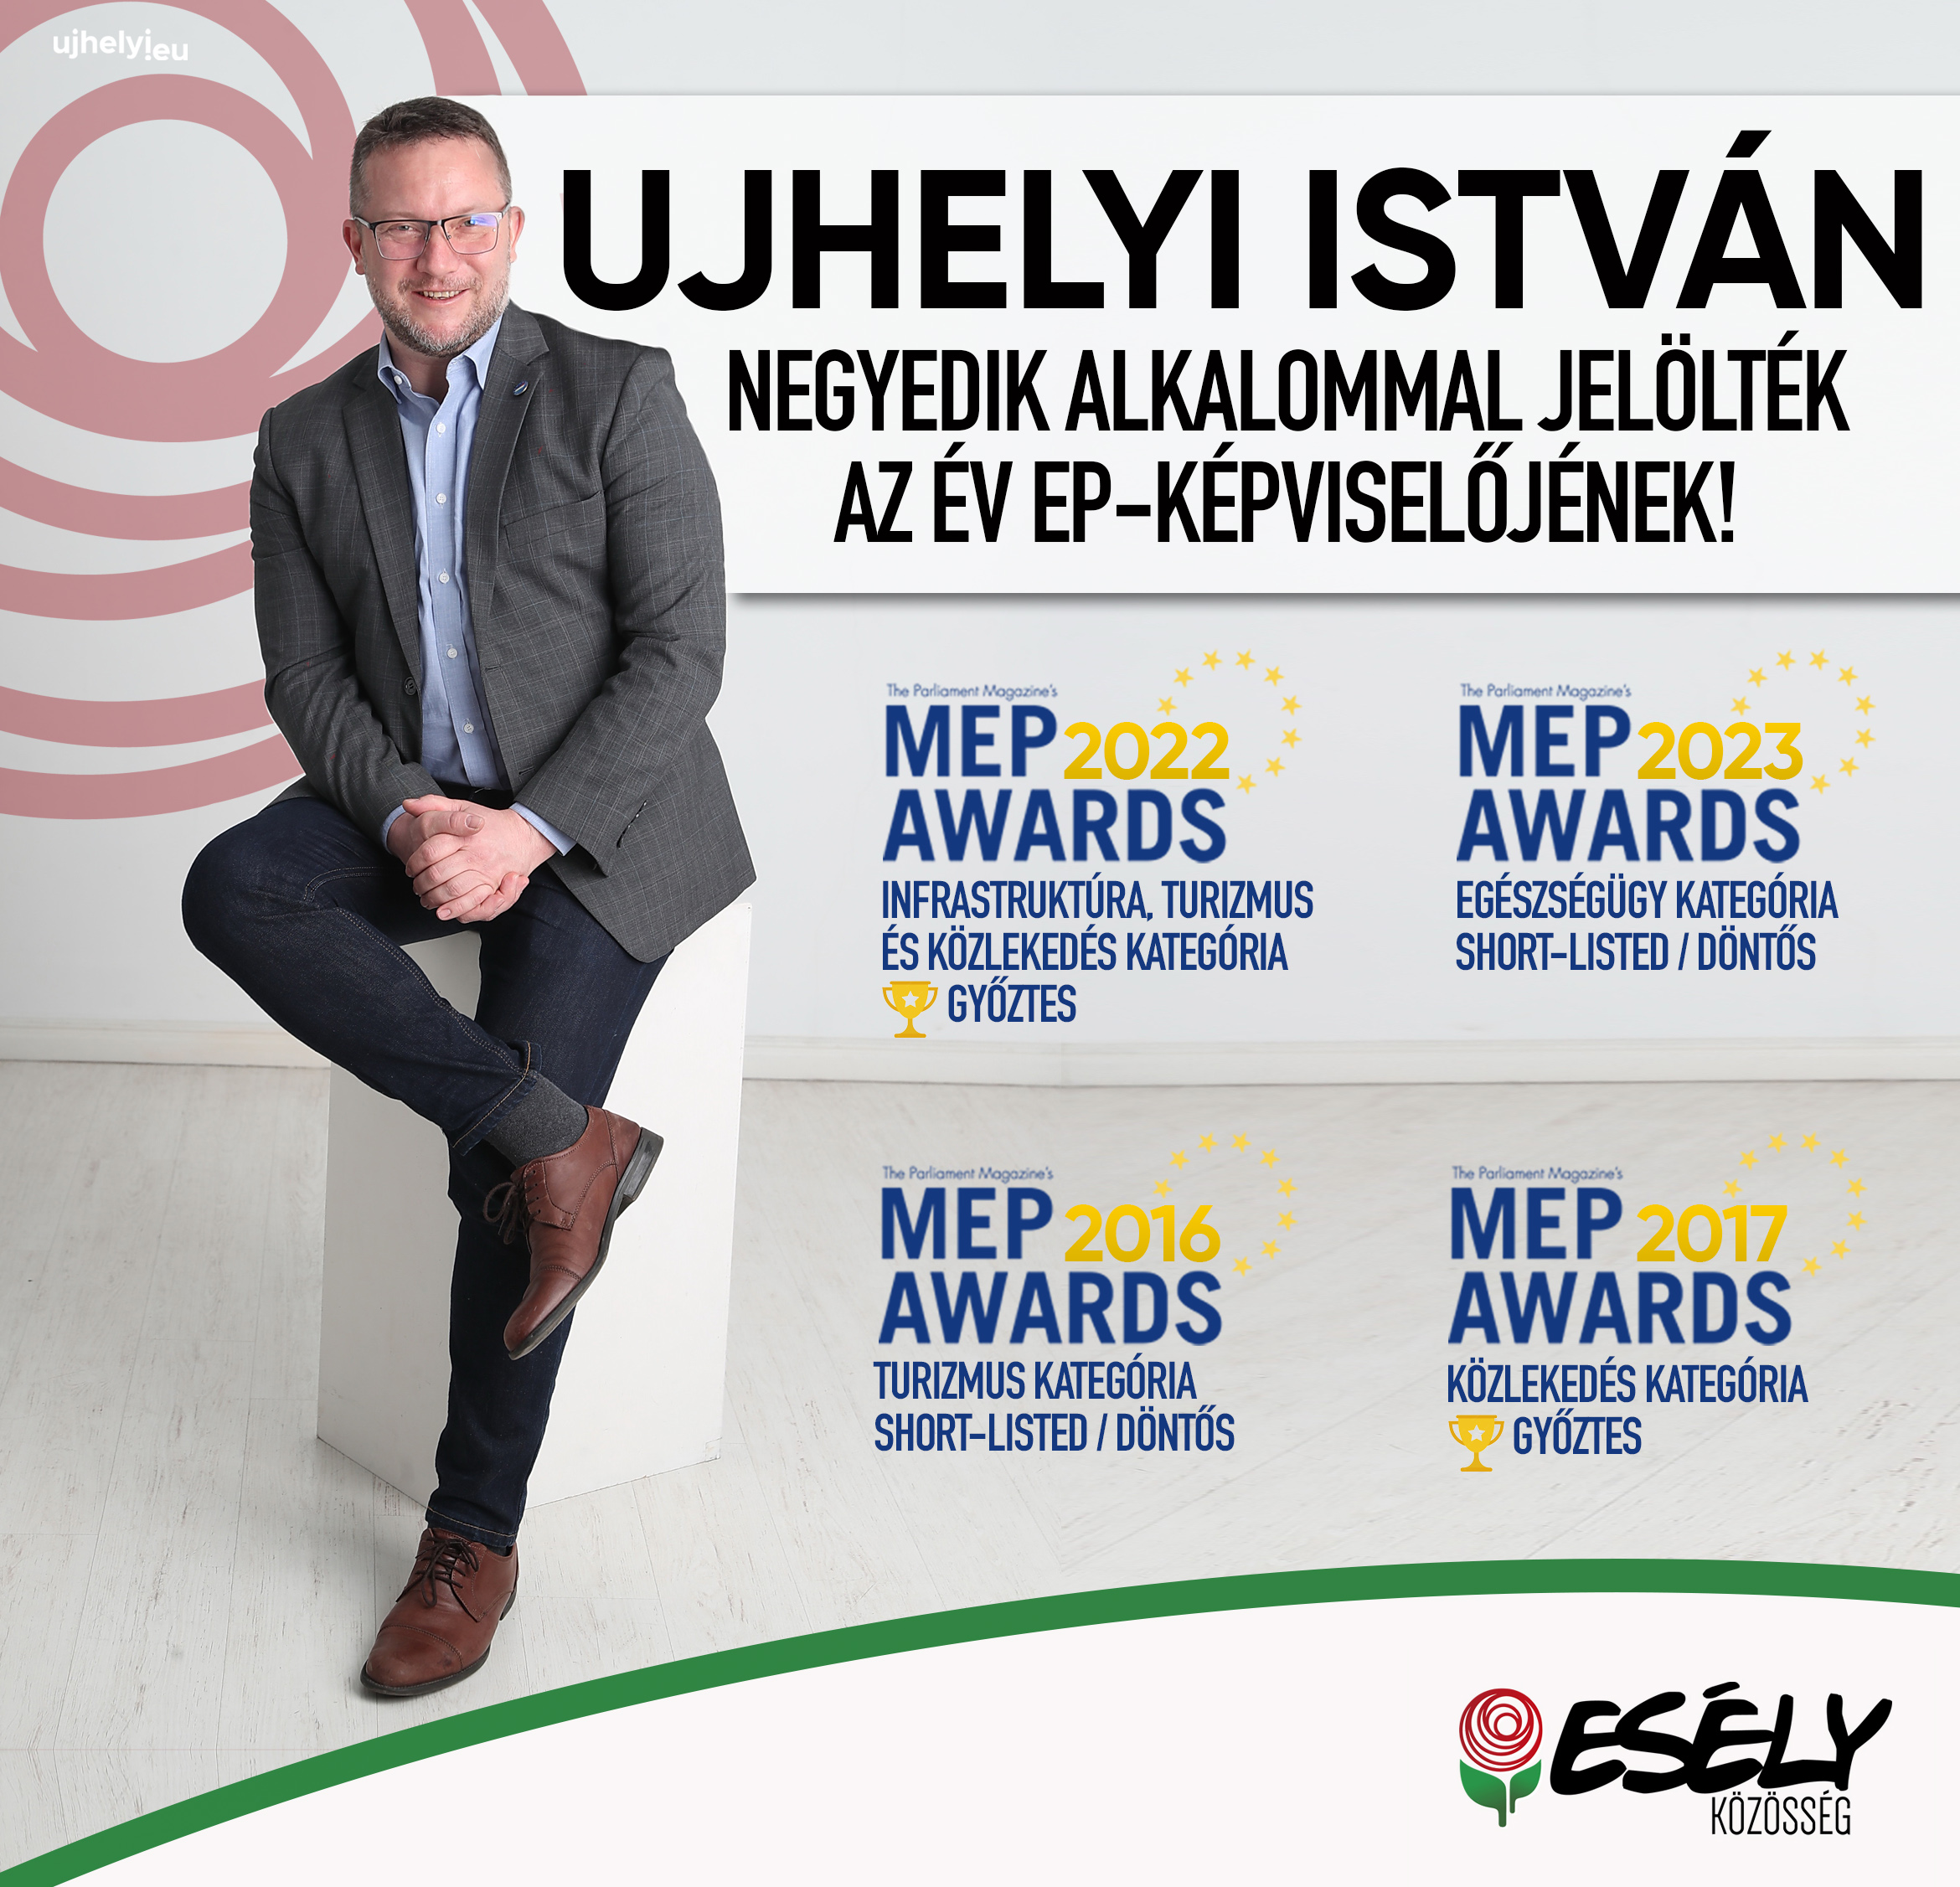 Ez már rekord: negyedik alkalommal jelölték az Év EP-képviselőjének Ujhelyi Istvánt!